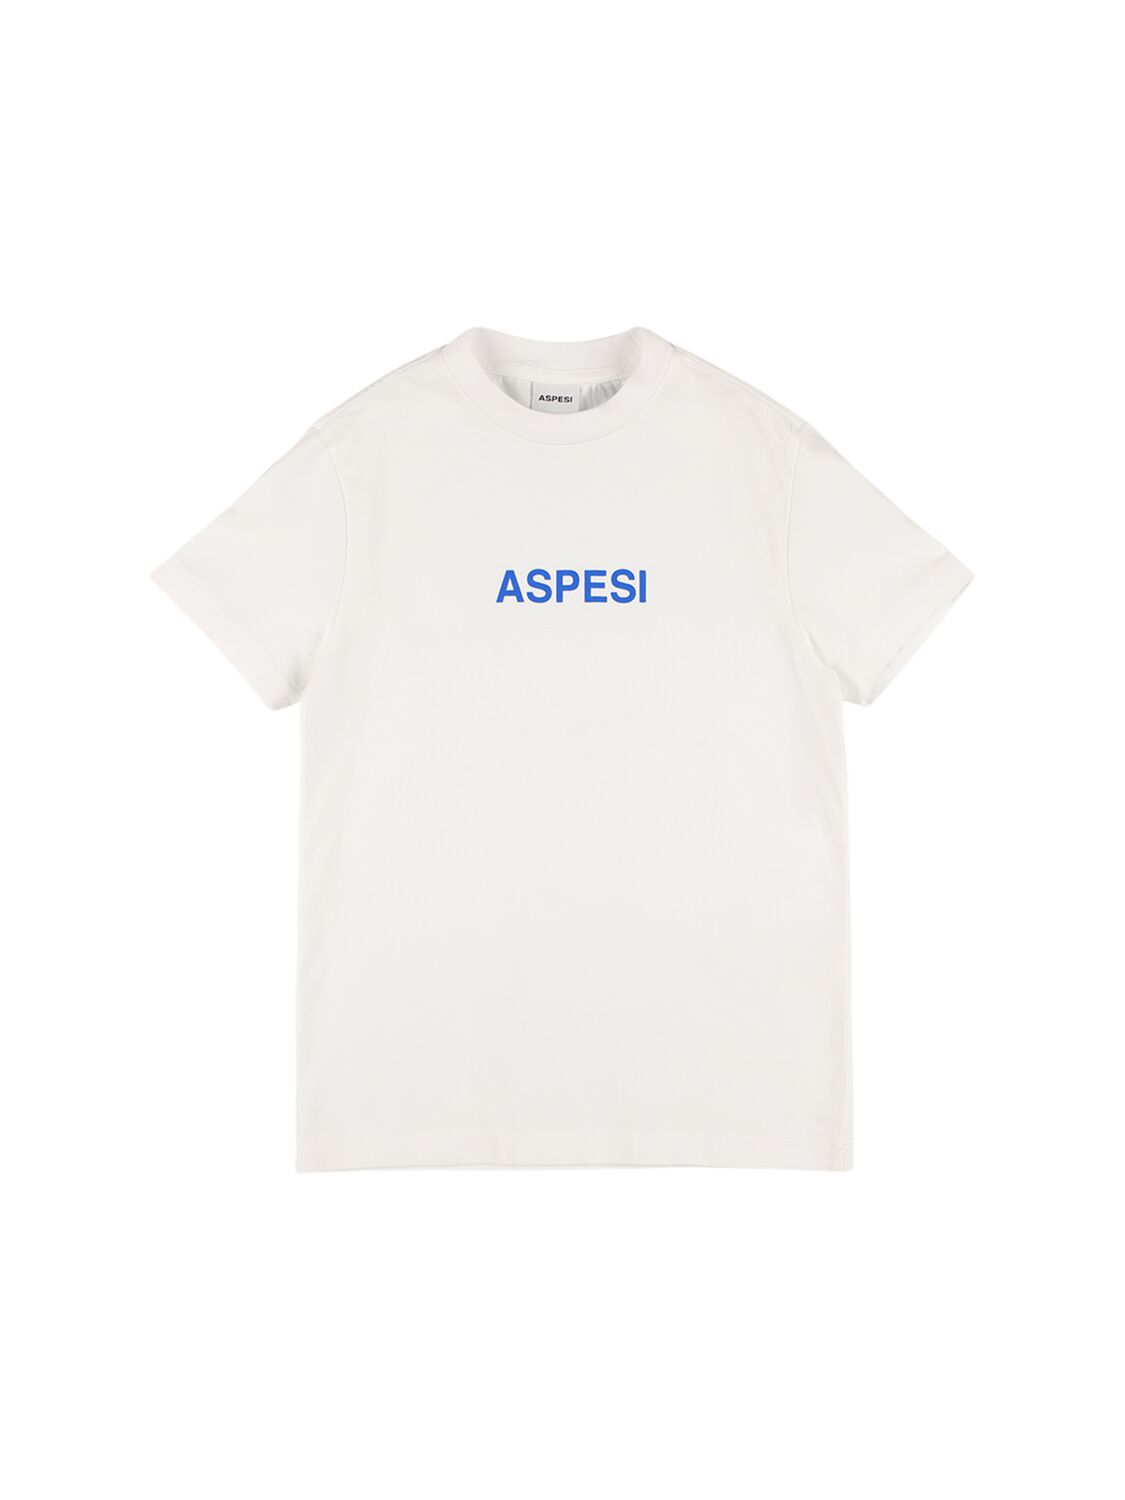 Aspesi Kids' Printed Logo Cotton Jersey T-shirt In White